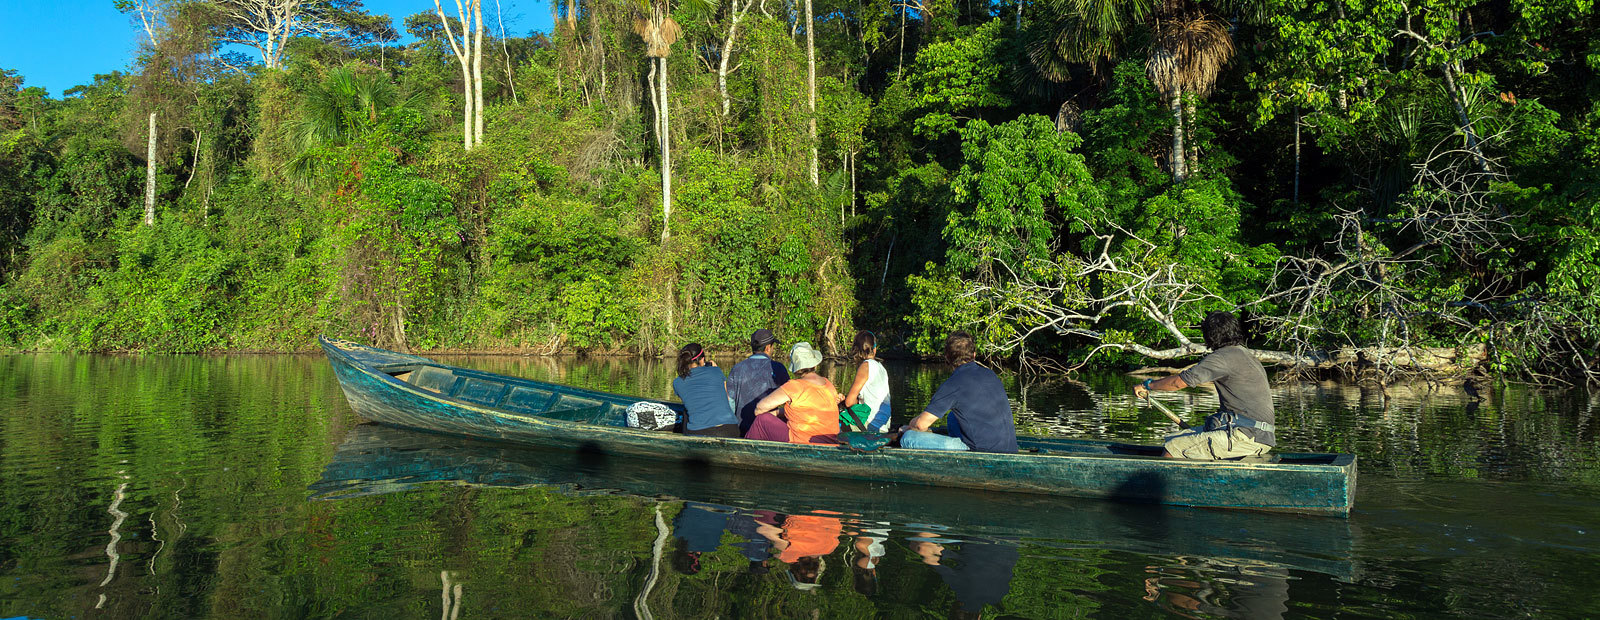 Kanotfärd i Amazonas